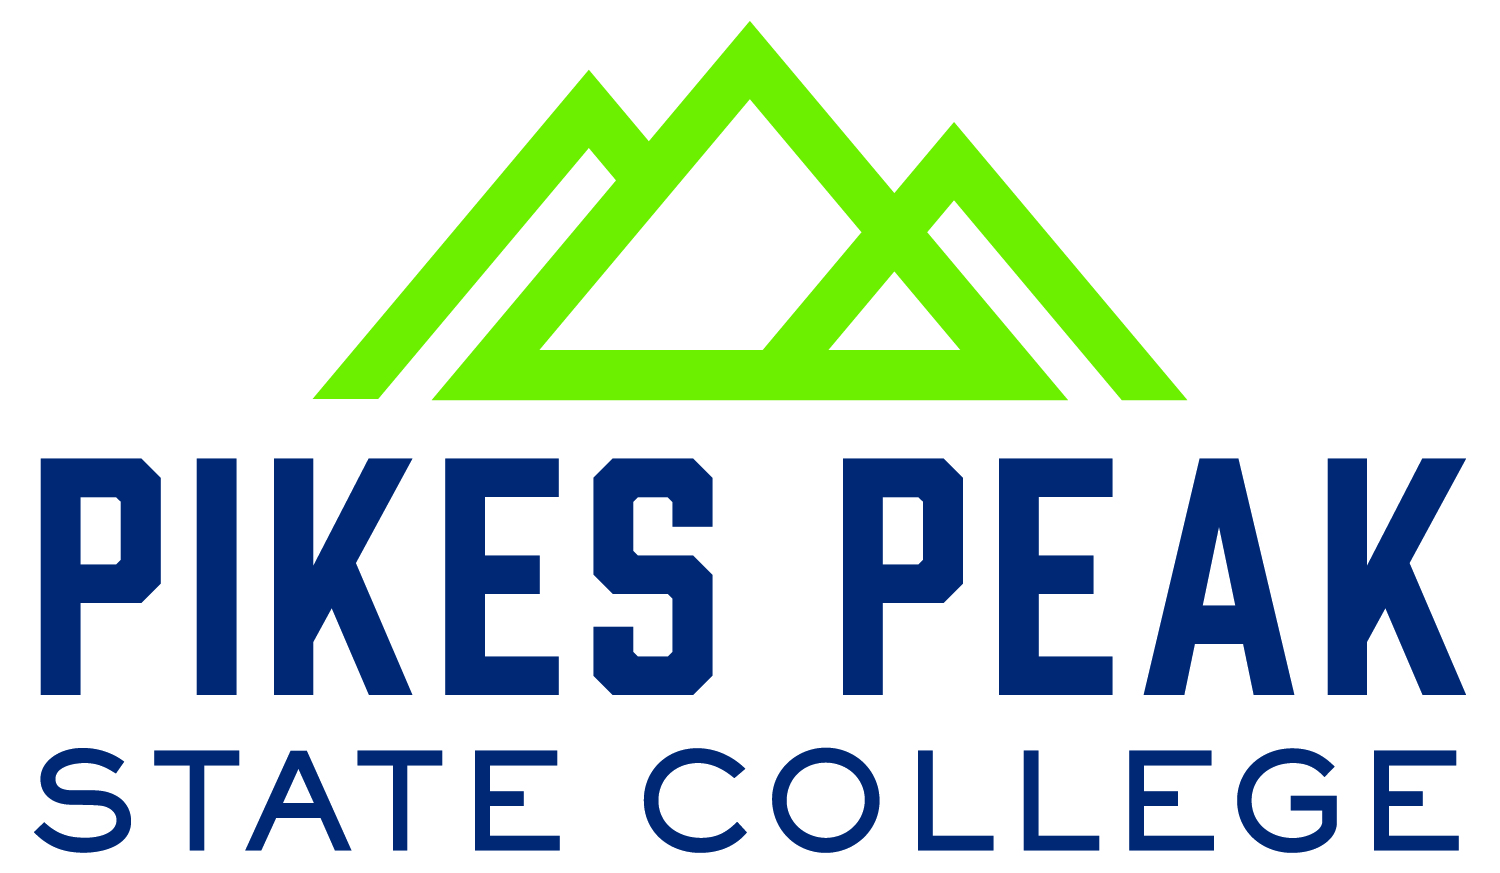 Pikes Peak State College news via